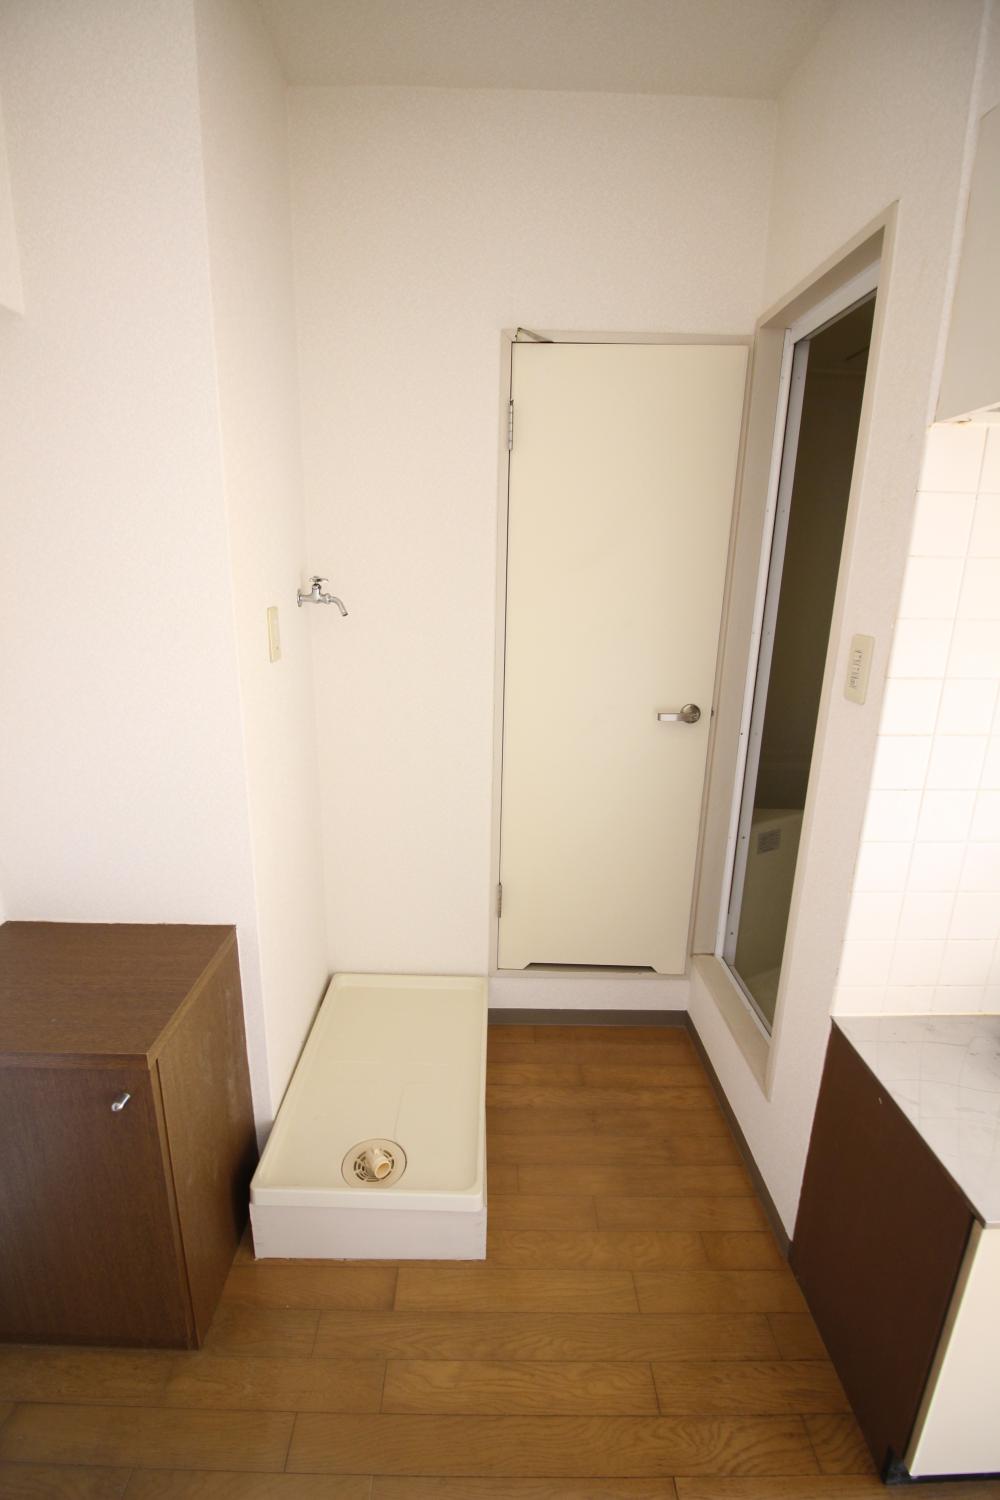 広島大学学生用の寮の専用室内洗濯機置き場